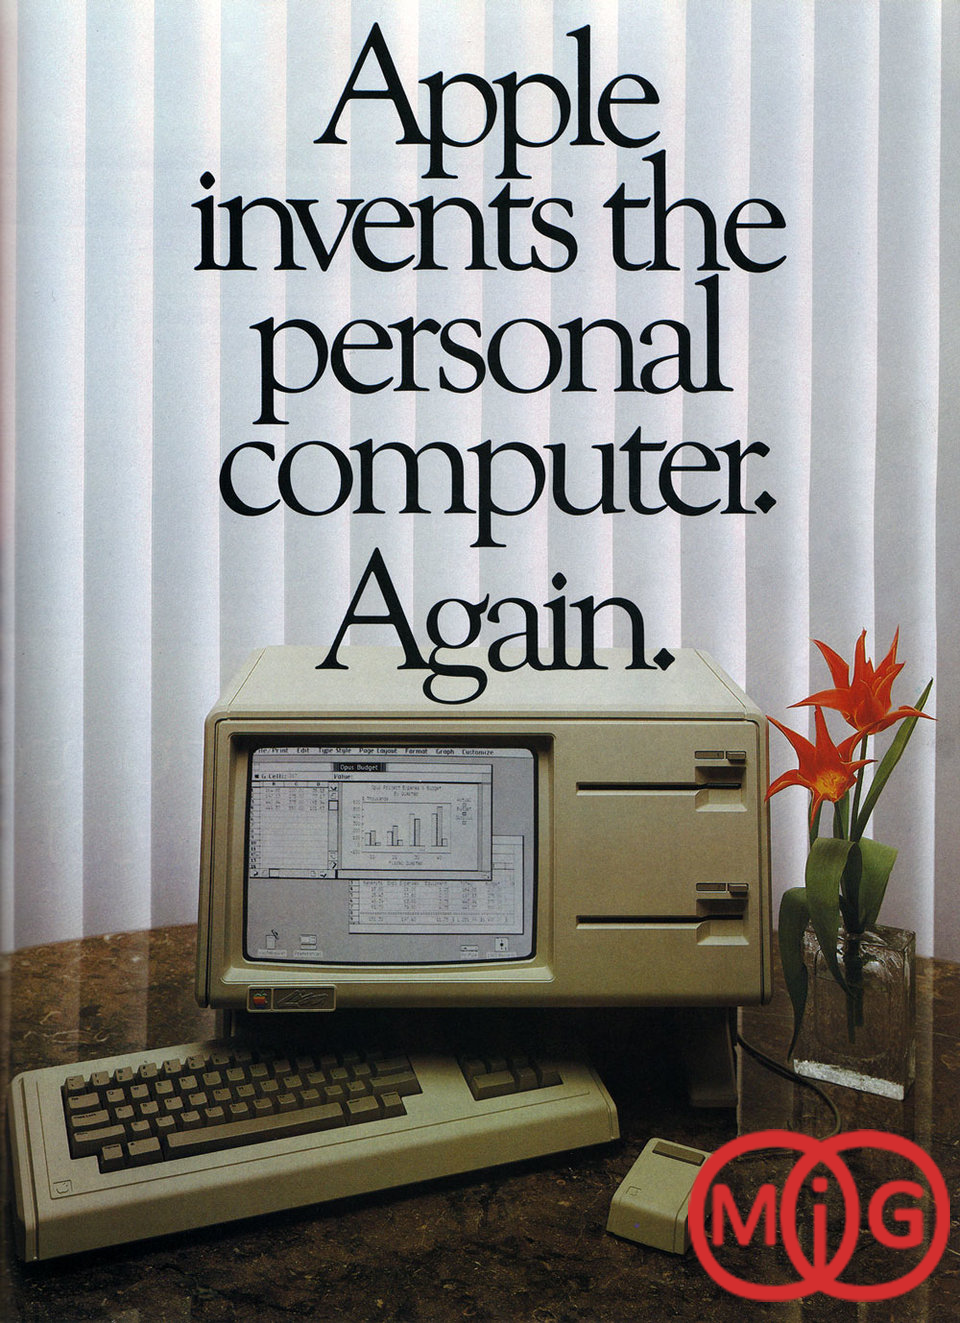 کامپیوترهای اپل سپس با رابط گرافیکی (GUI) برای اولین بار در کامپیوترهای شخصی پیاده سازی شد.